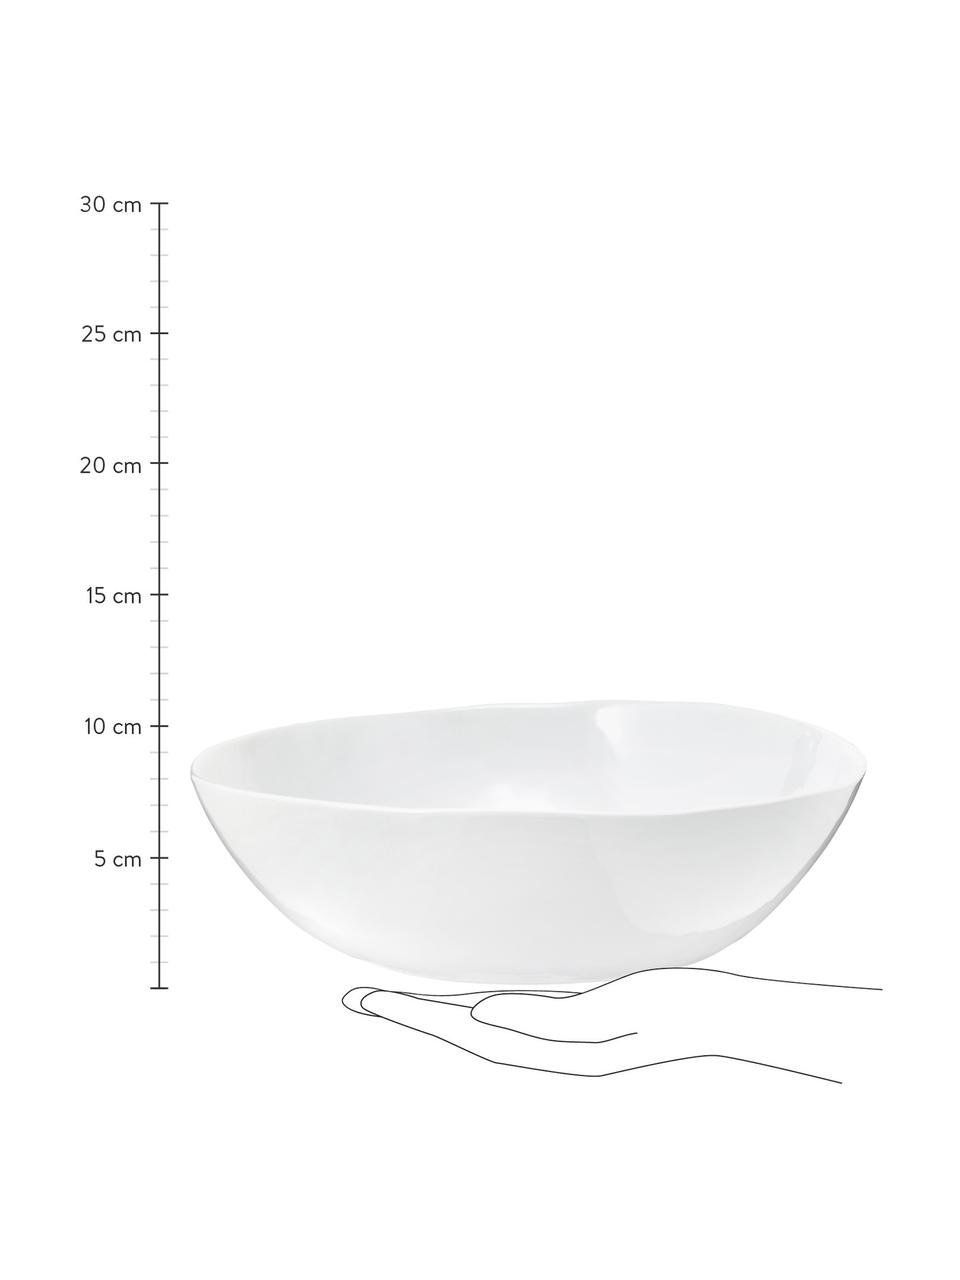 Owalna miska Porcelino, Porcelana o celowo nierównym kształcie, Biały, S 33 x G 37 cm